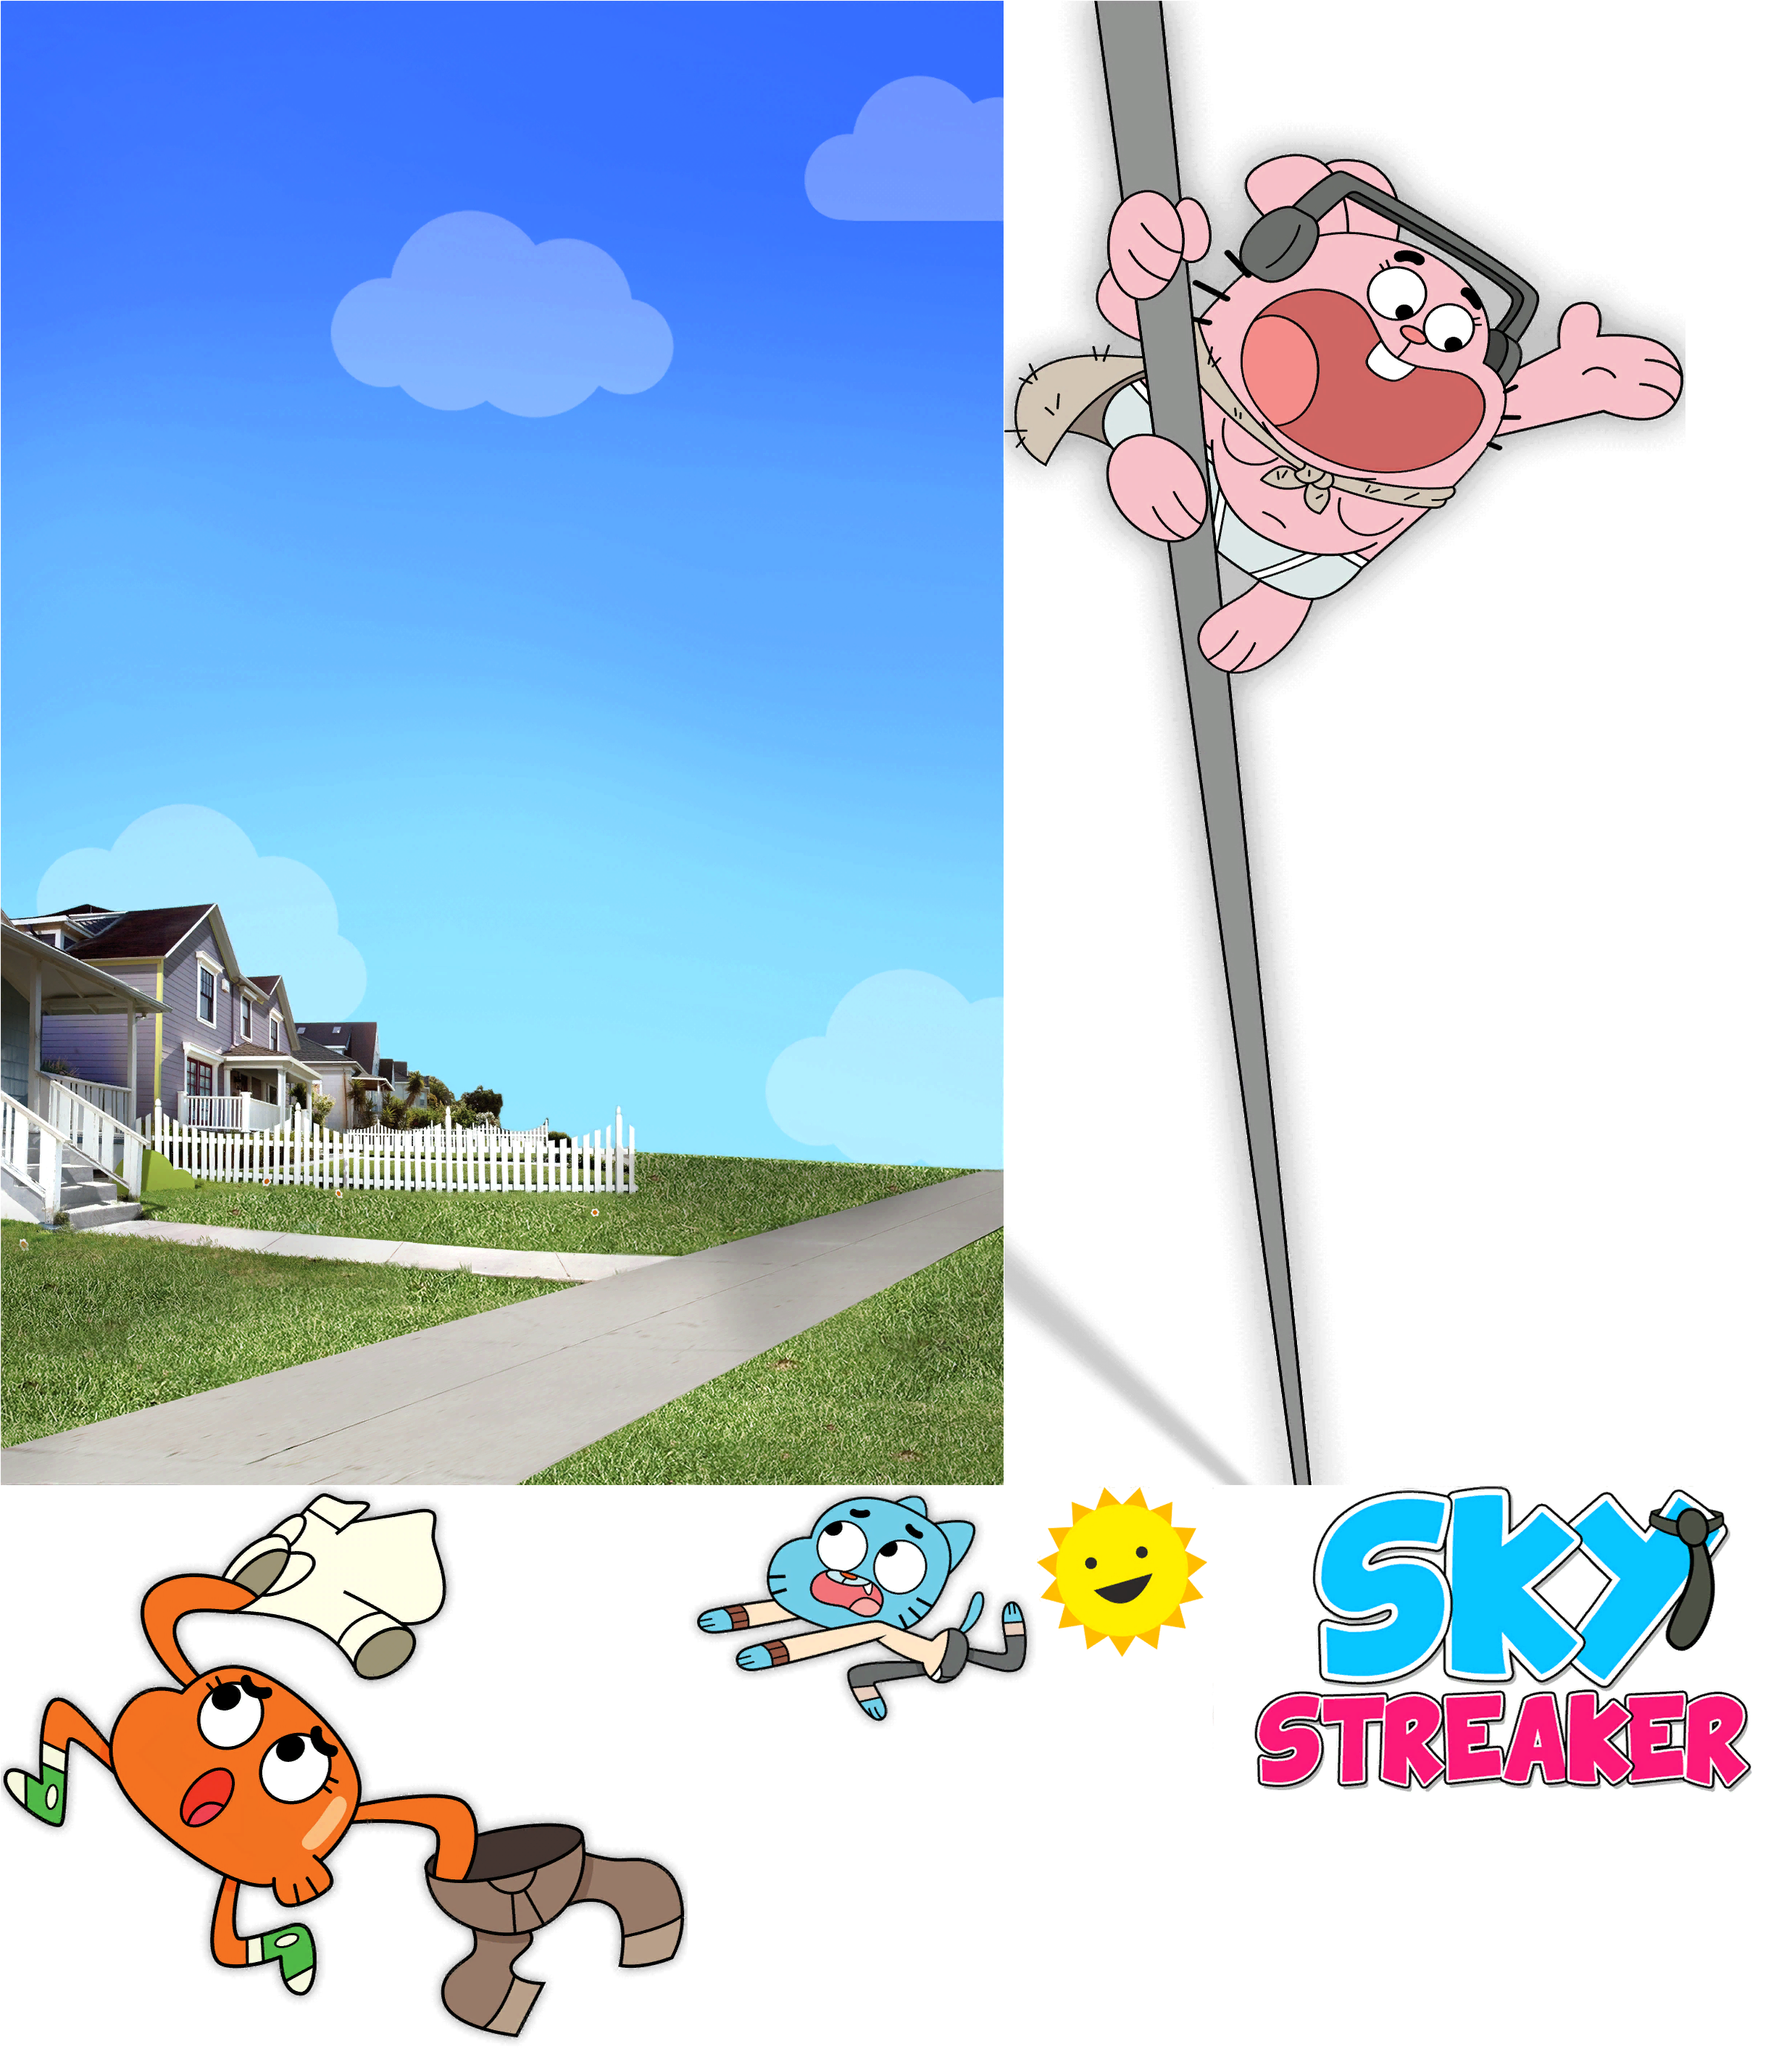 The Amazing World of Gumball: Sky Streaker - Main Menu